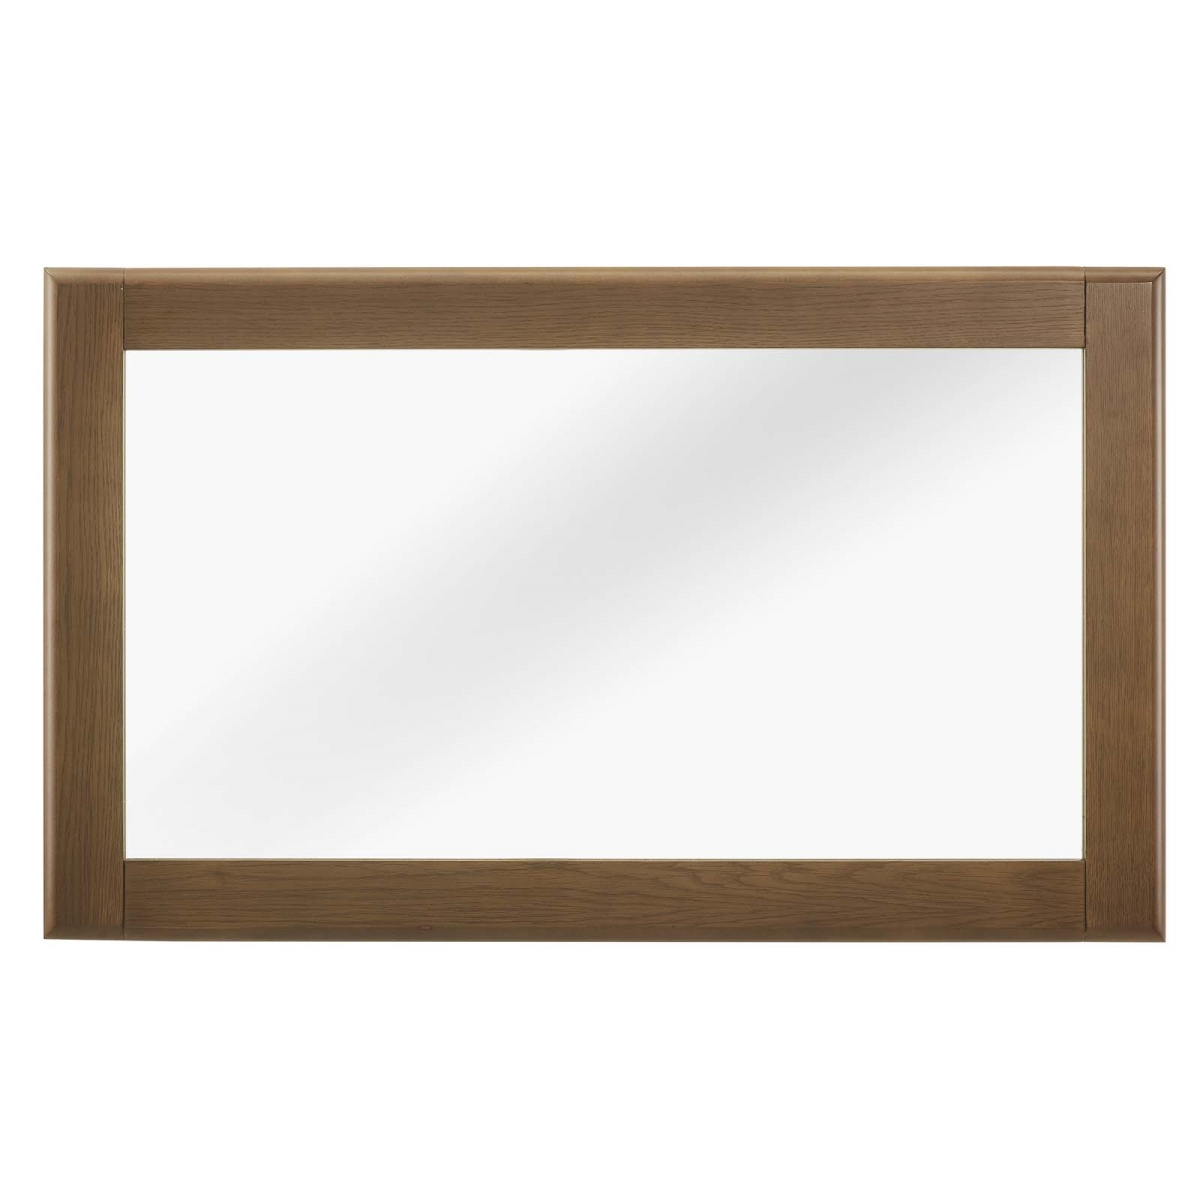 Mod-6067-chn Talwyn Wood Frame Mirror - Chestnut, 0.5 X 39.5 X 23.5 In.